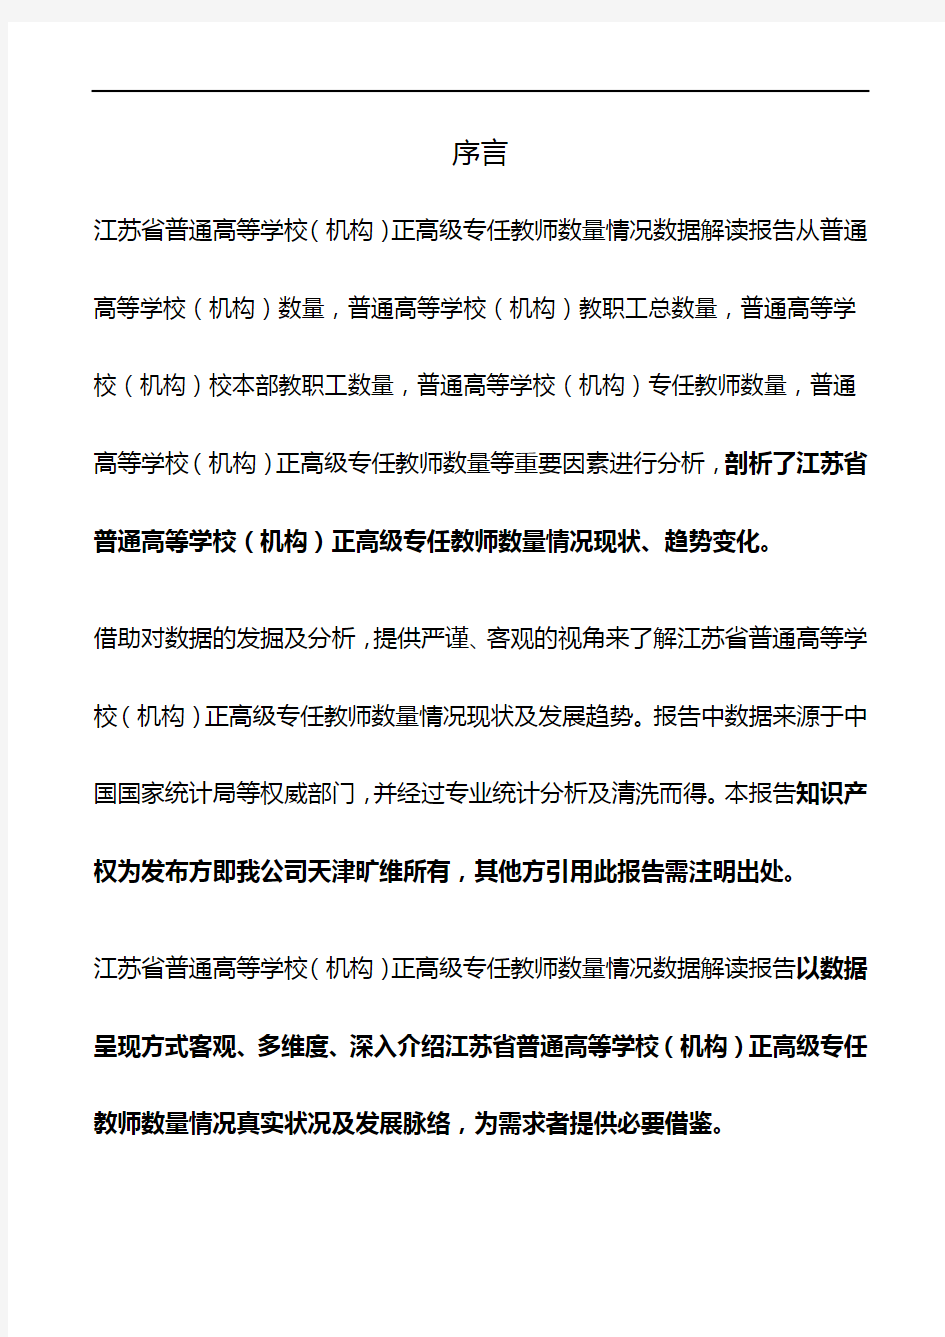 江苏省普通高等学校(机构)正高级专任教师数量情况3年数据解读报告2019版